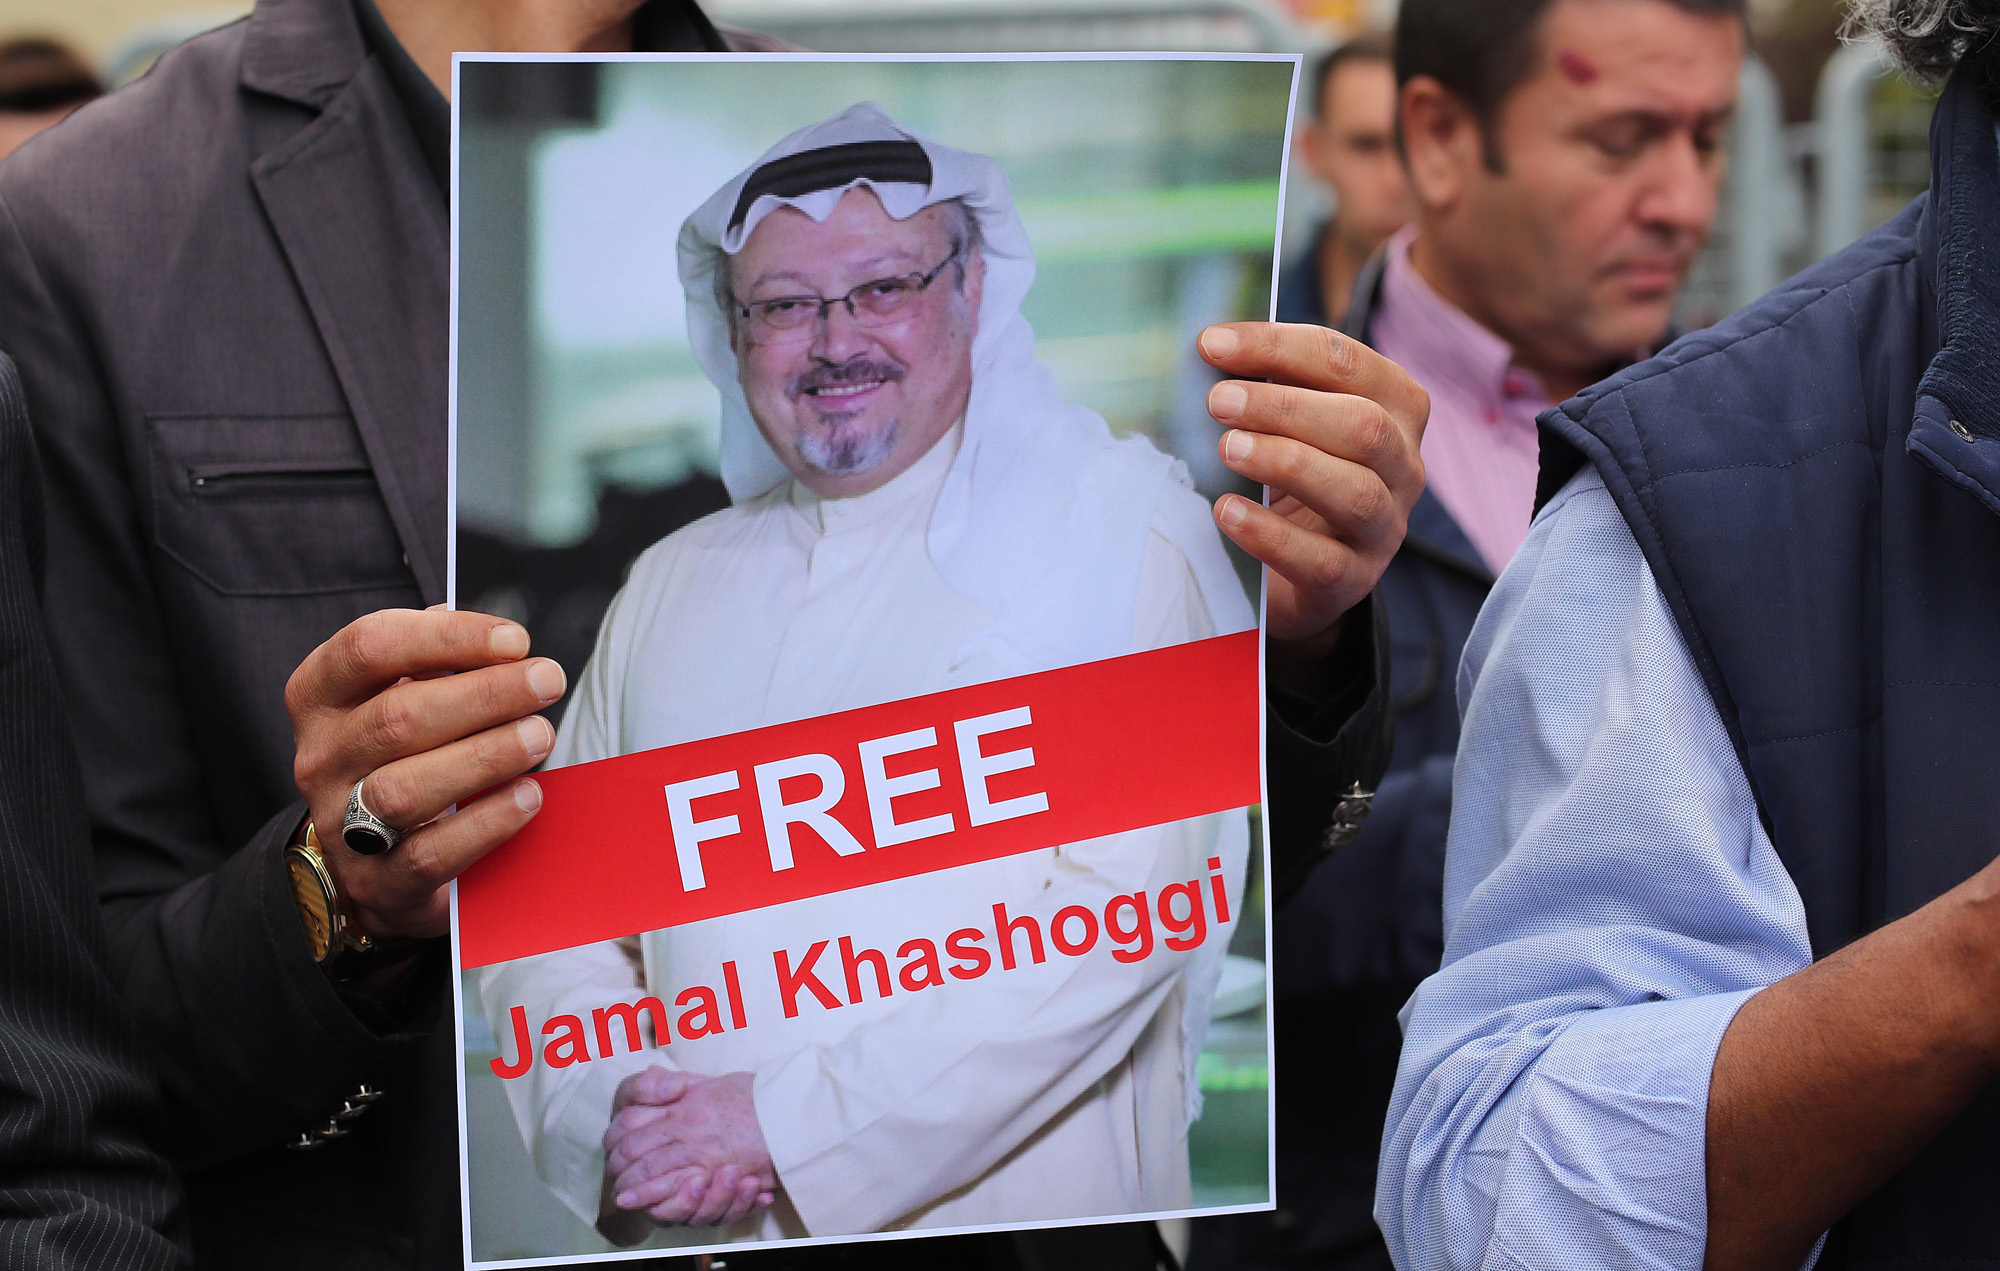 Arabia Saudita debe probar que el periodista desaparecido salió del consulado